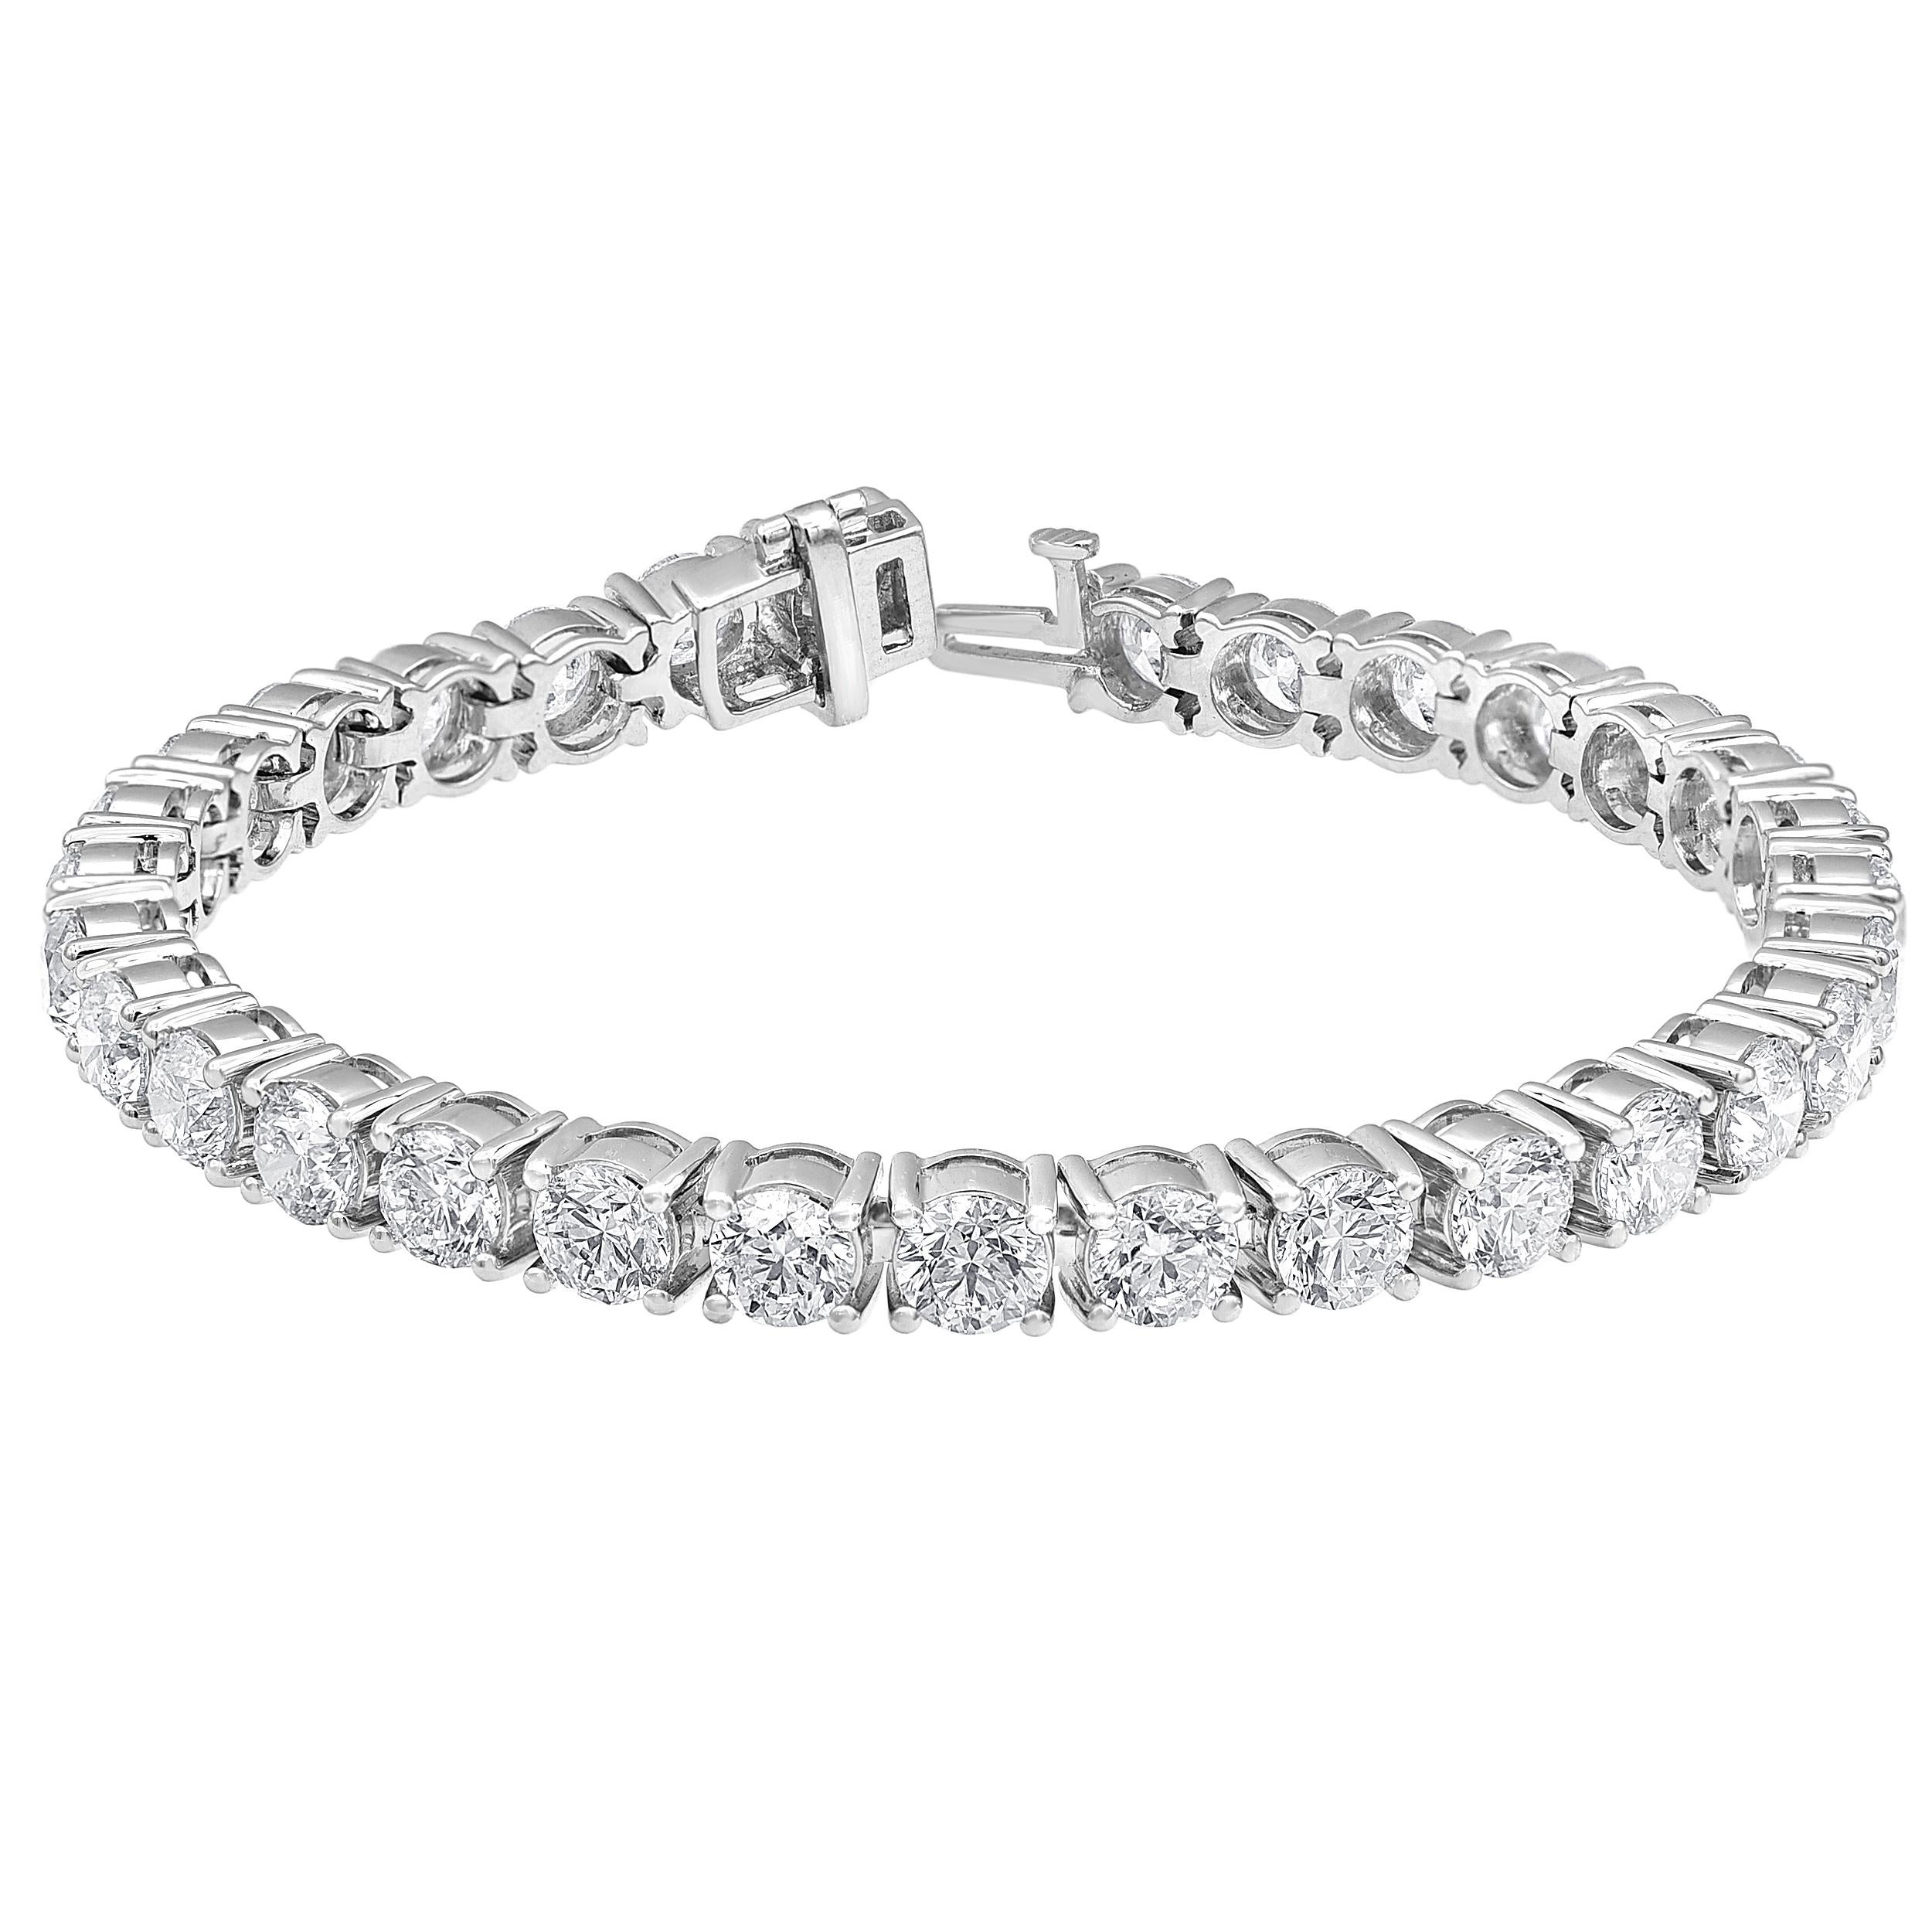 Vous admirerez le style classique et intemporel de ce superbe bracelet tennis en diamants. Réalisé en or blanc 14 carats, ce look met en valeur une rangée de diamants éblouissants de 1,50 ct. chacun. Exquis avec 15,50 cts de diamants et un brillant